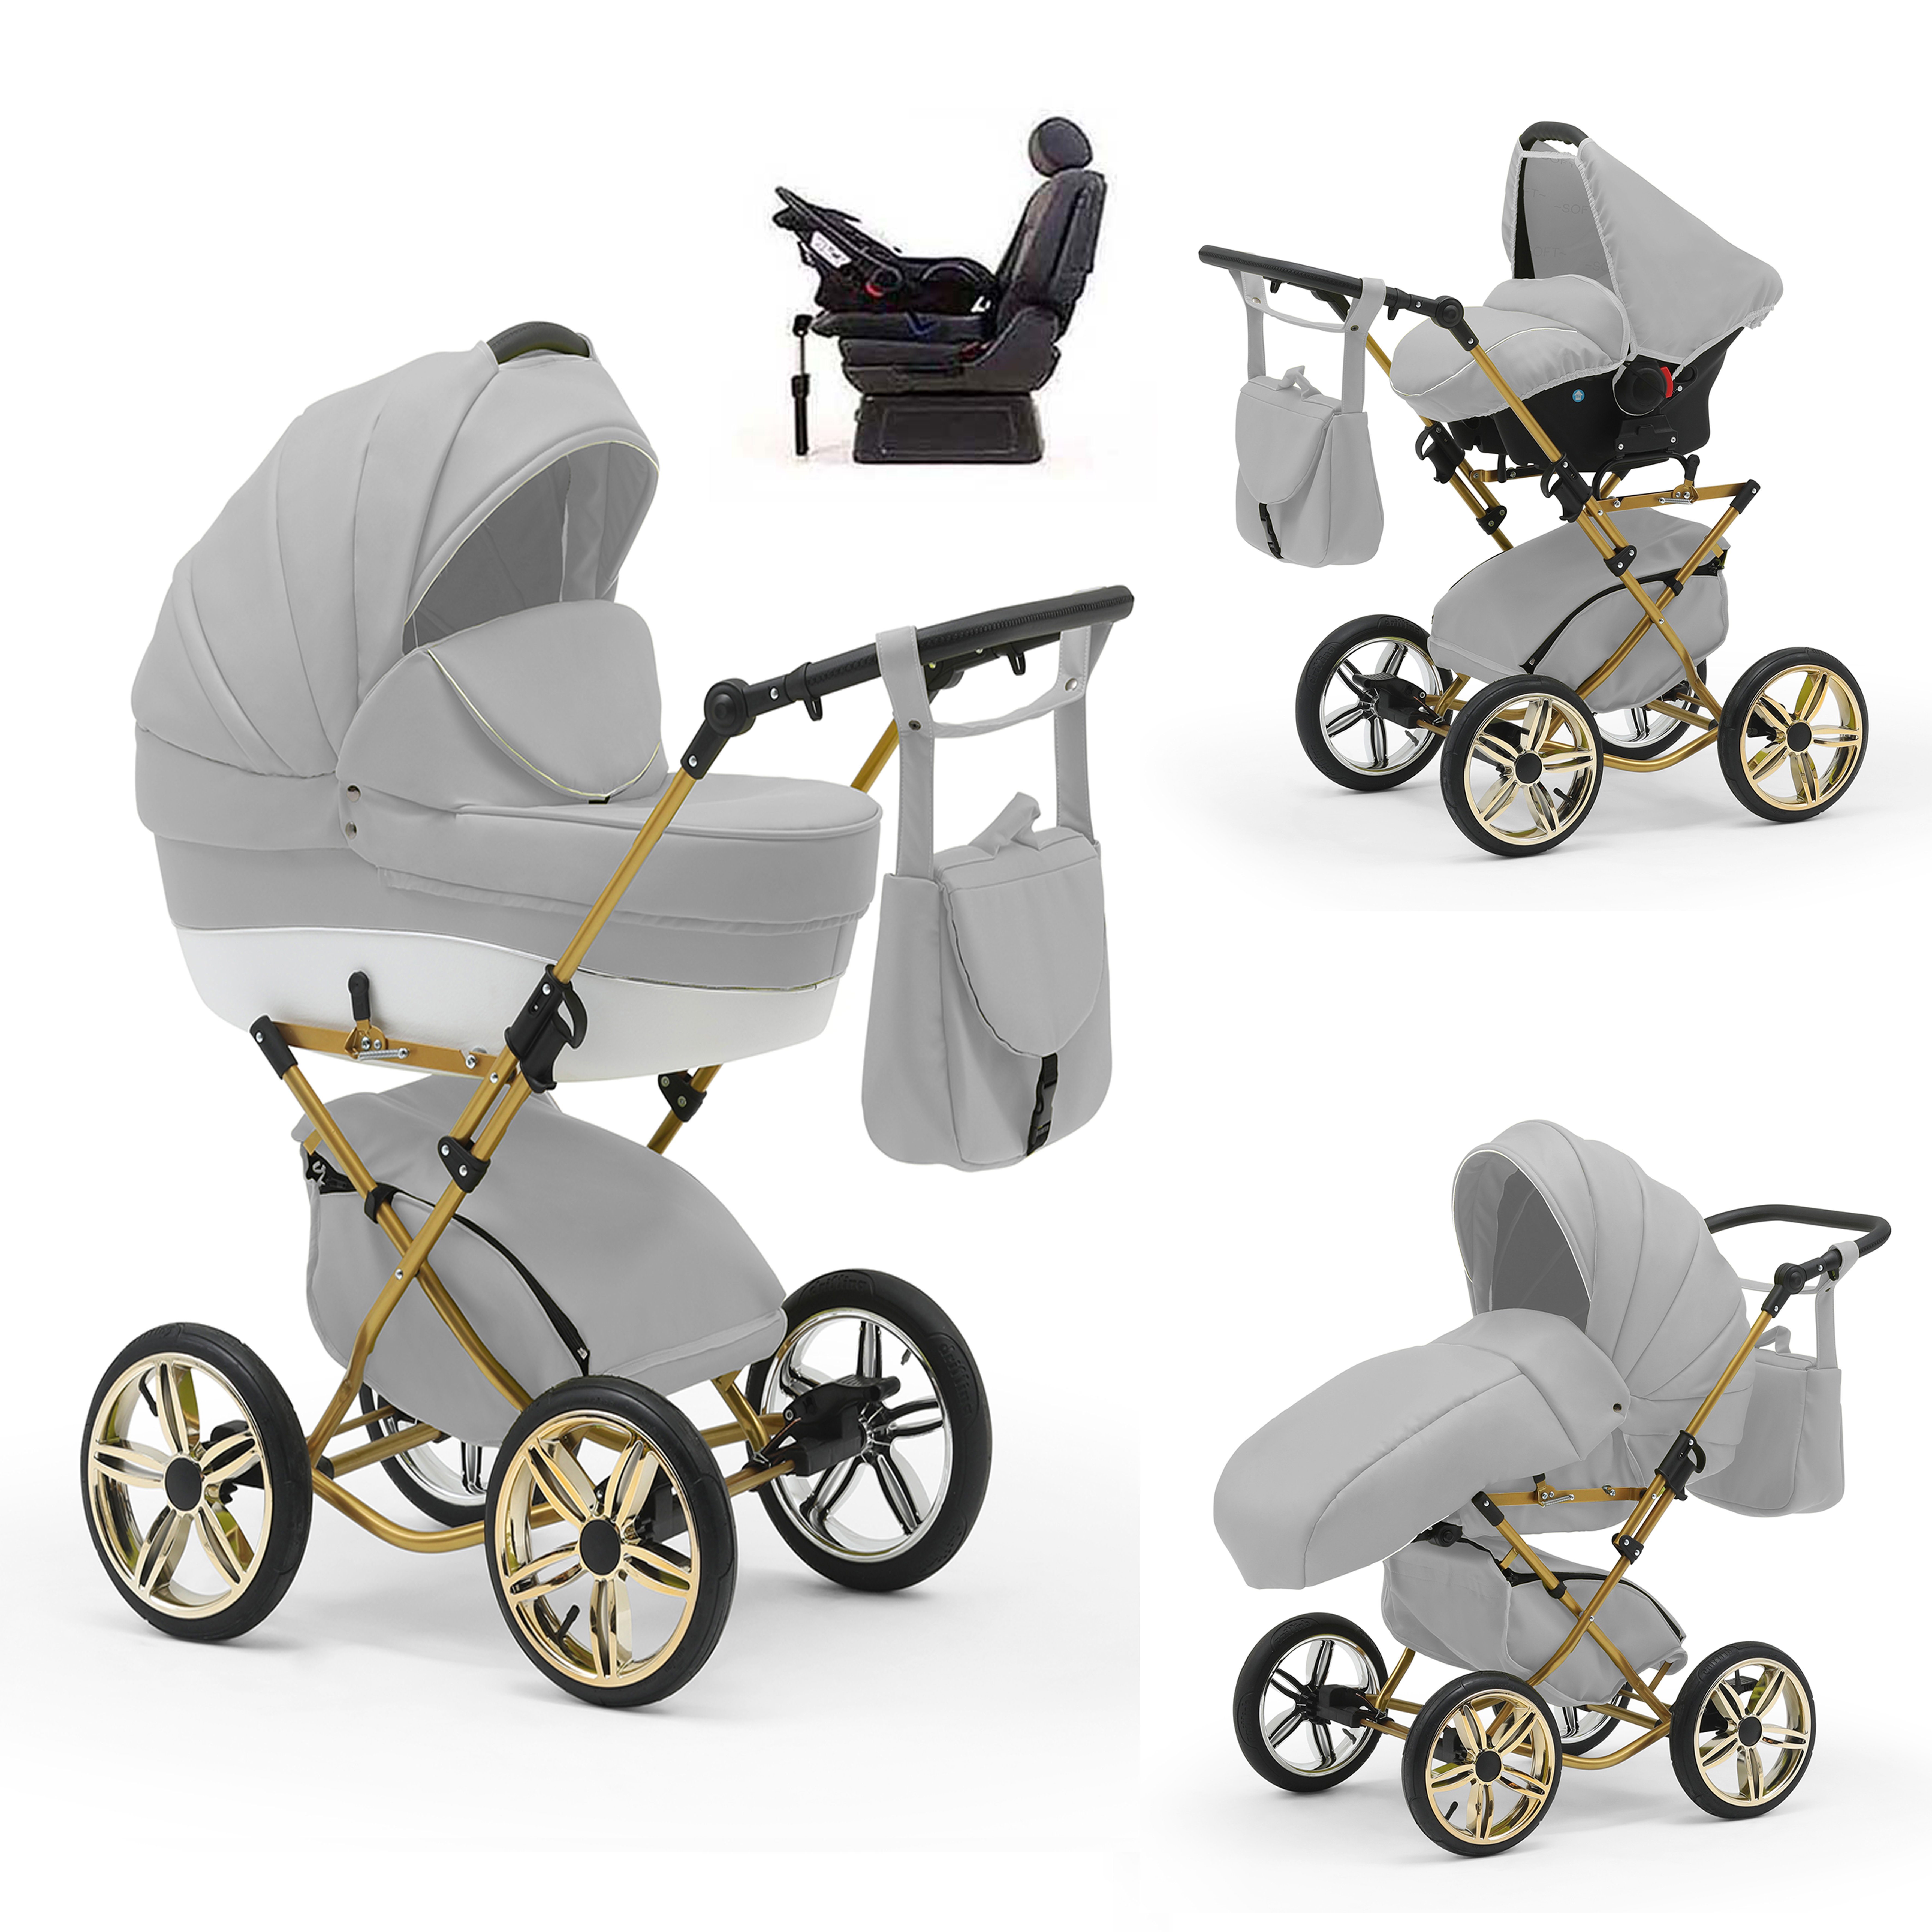 babies-on-wheels Kombi-Kinderwagen Sorento 4 in 1 inkl. Autositz und Iso Base - 14 Teile - in 10 Designs Hellgrau-Weiß | Kombikinderwagen